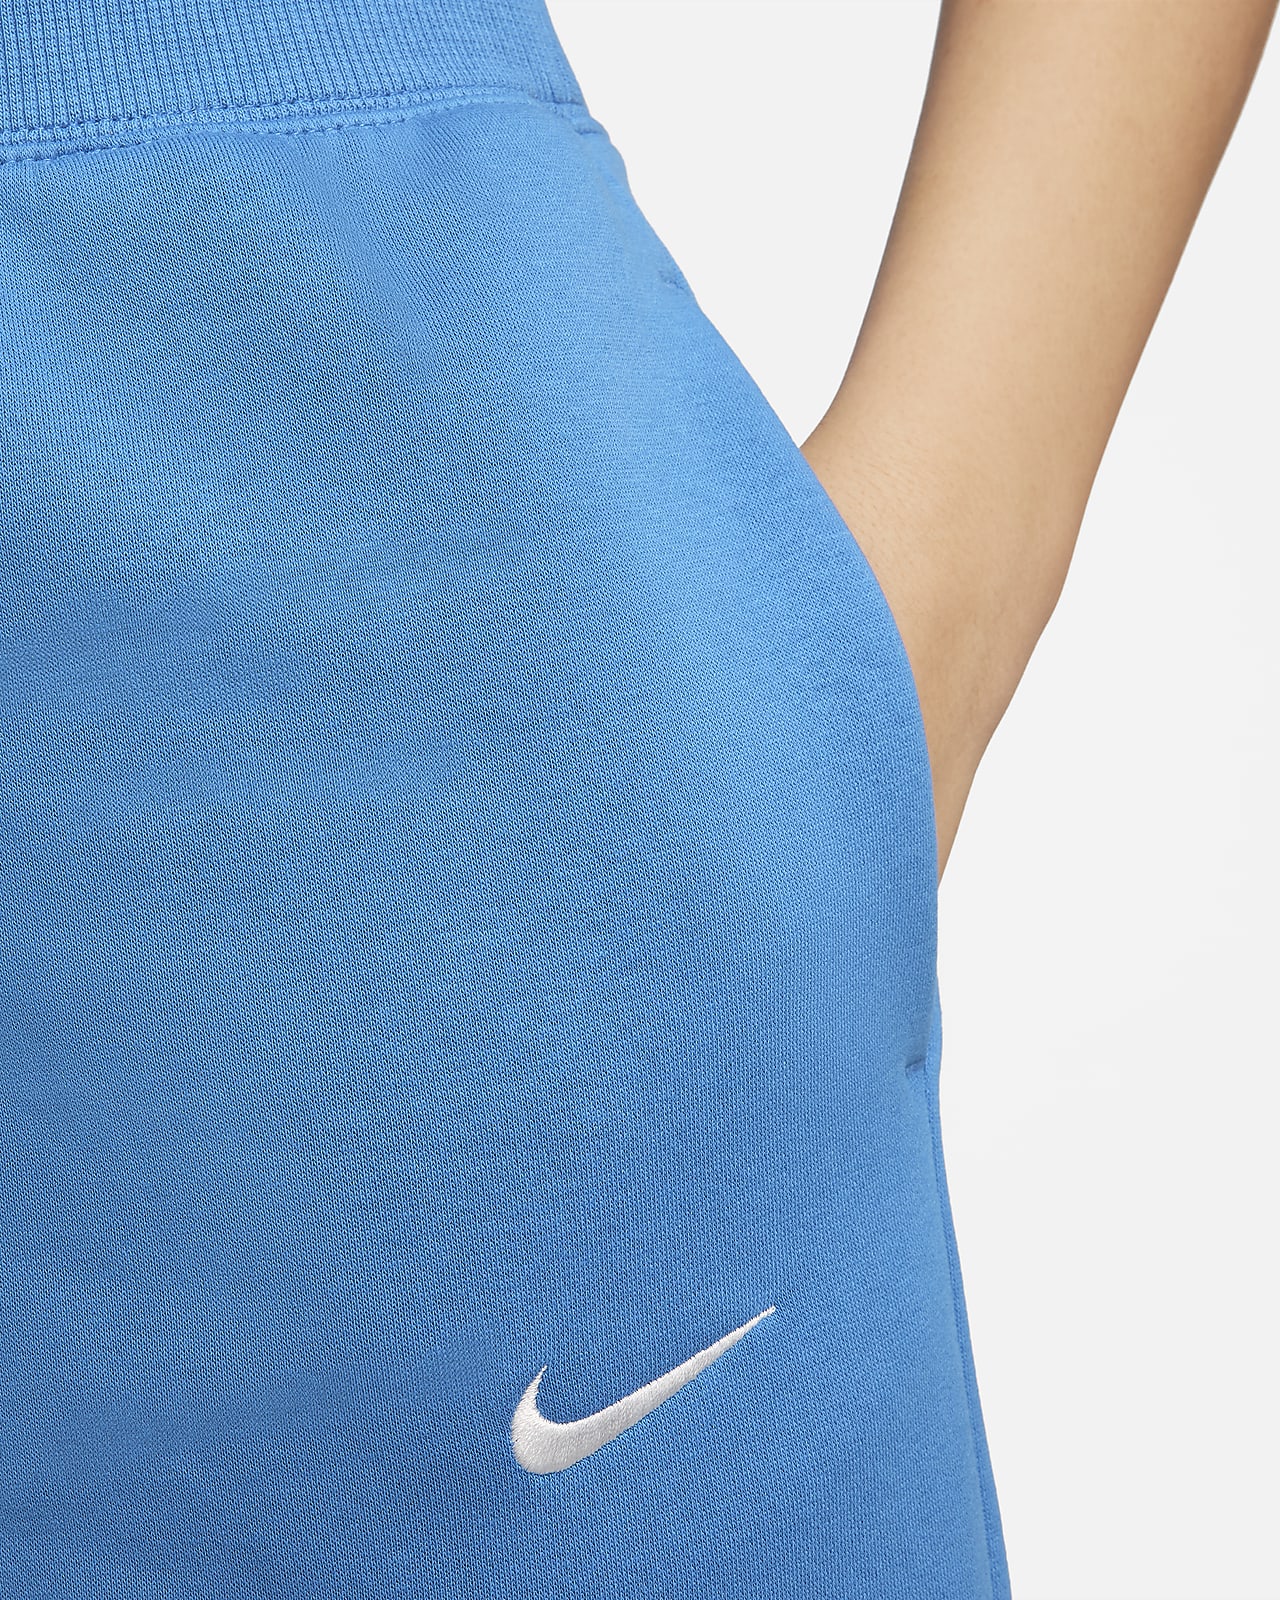  Nike Sportswear Phoenix Fleece Women's High-Waisted